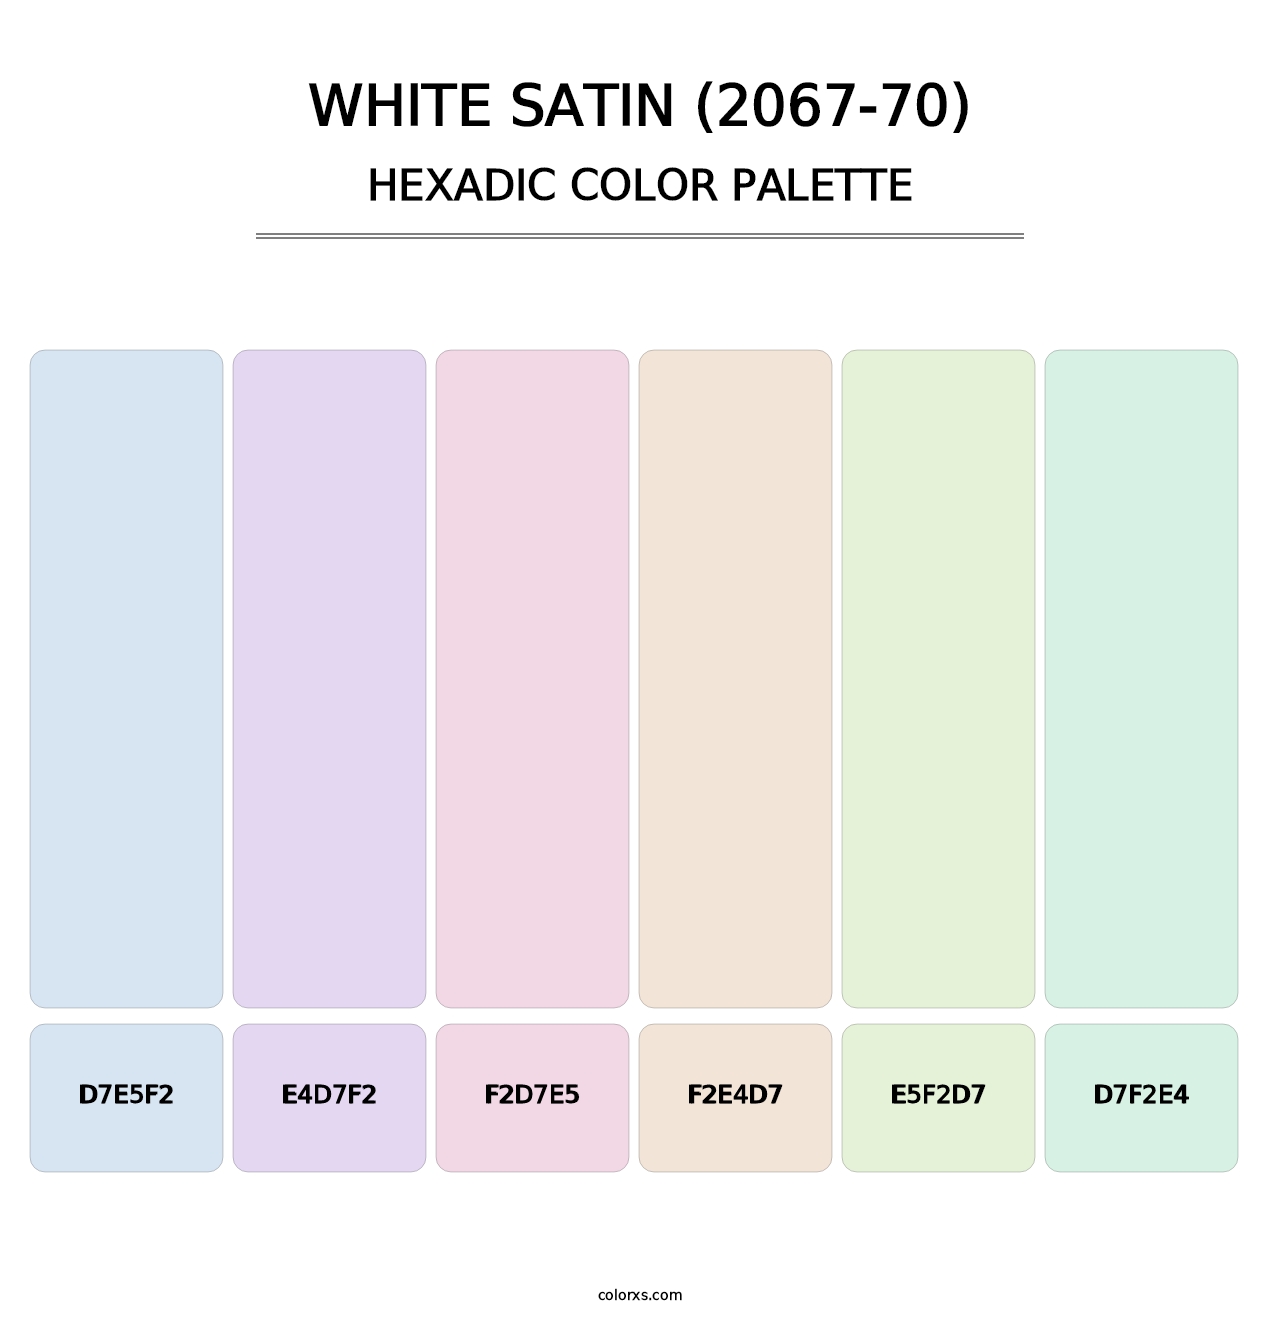 White Satin (2067-70) - Hexadic Color Palette